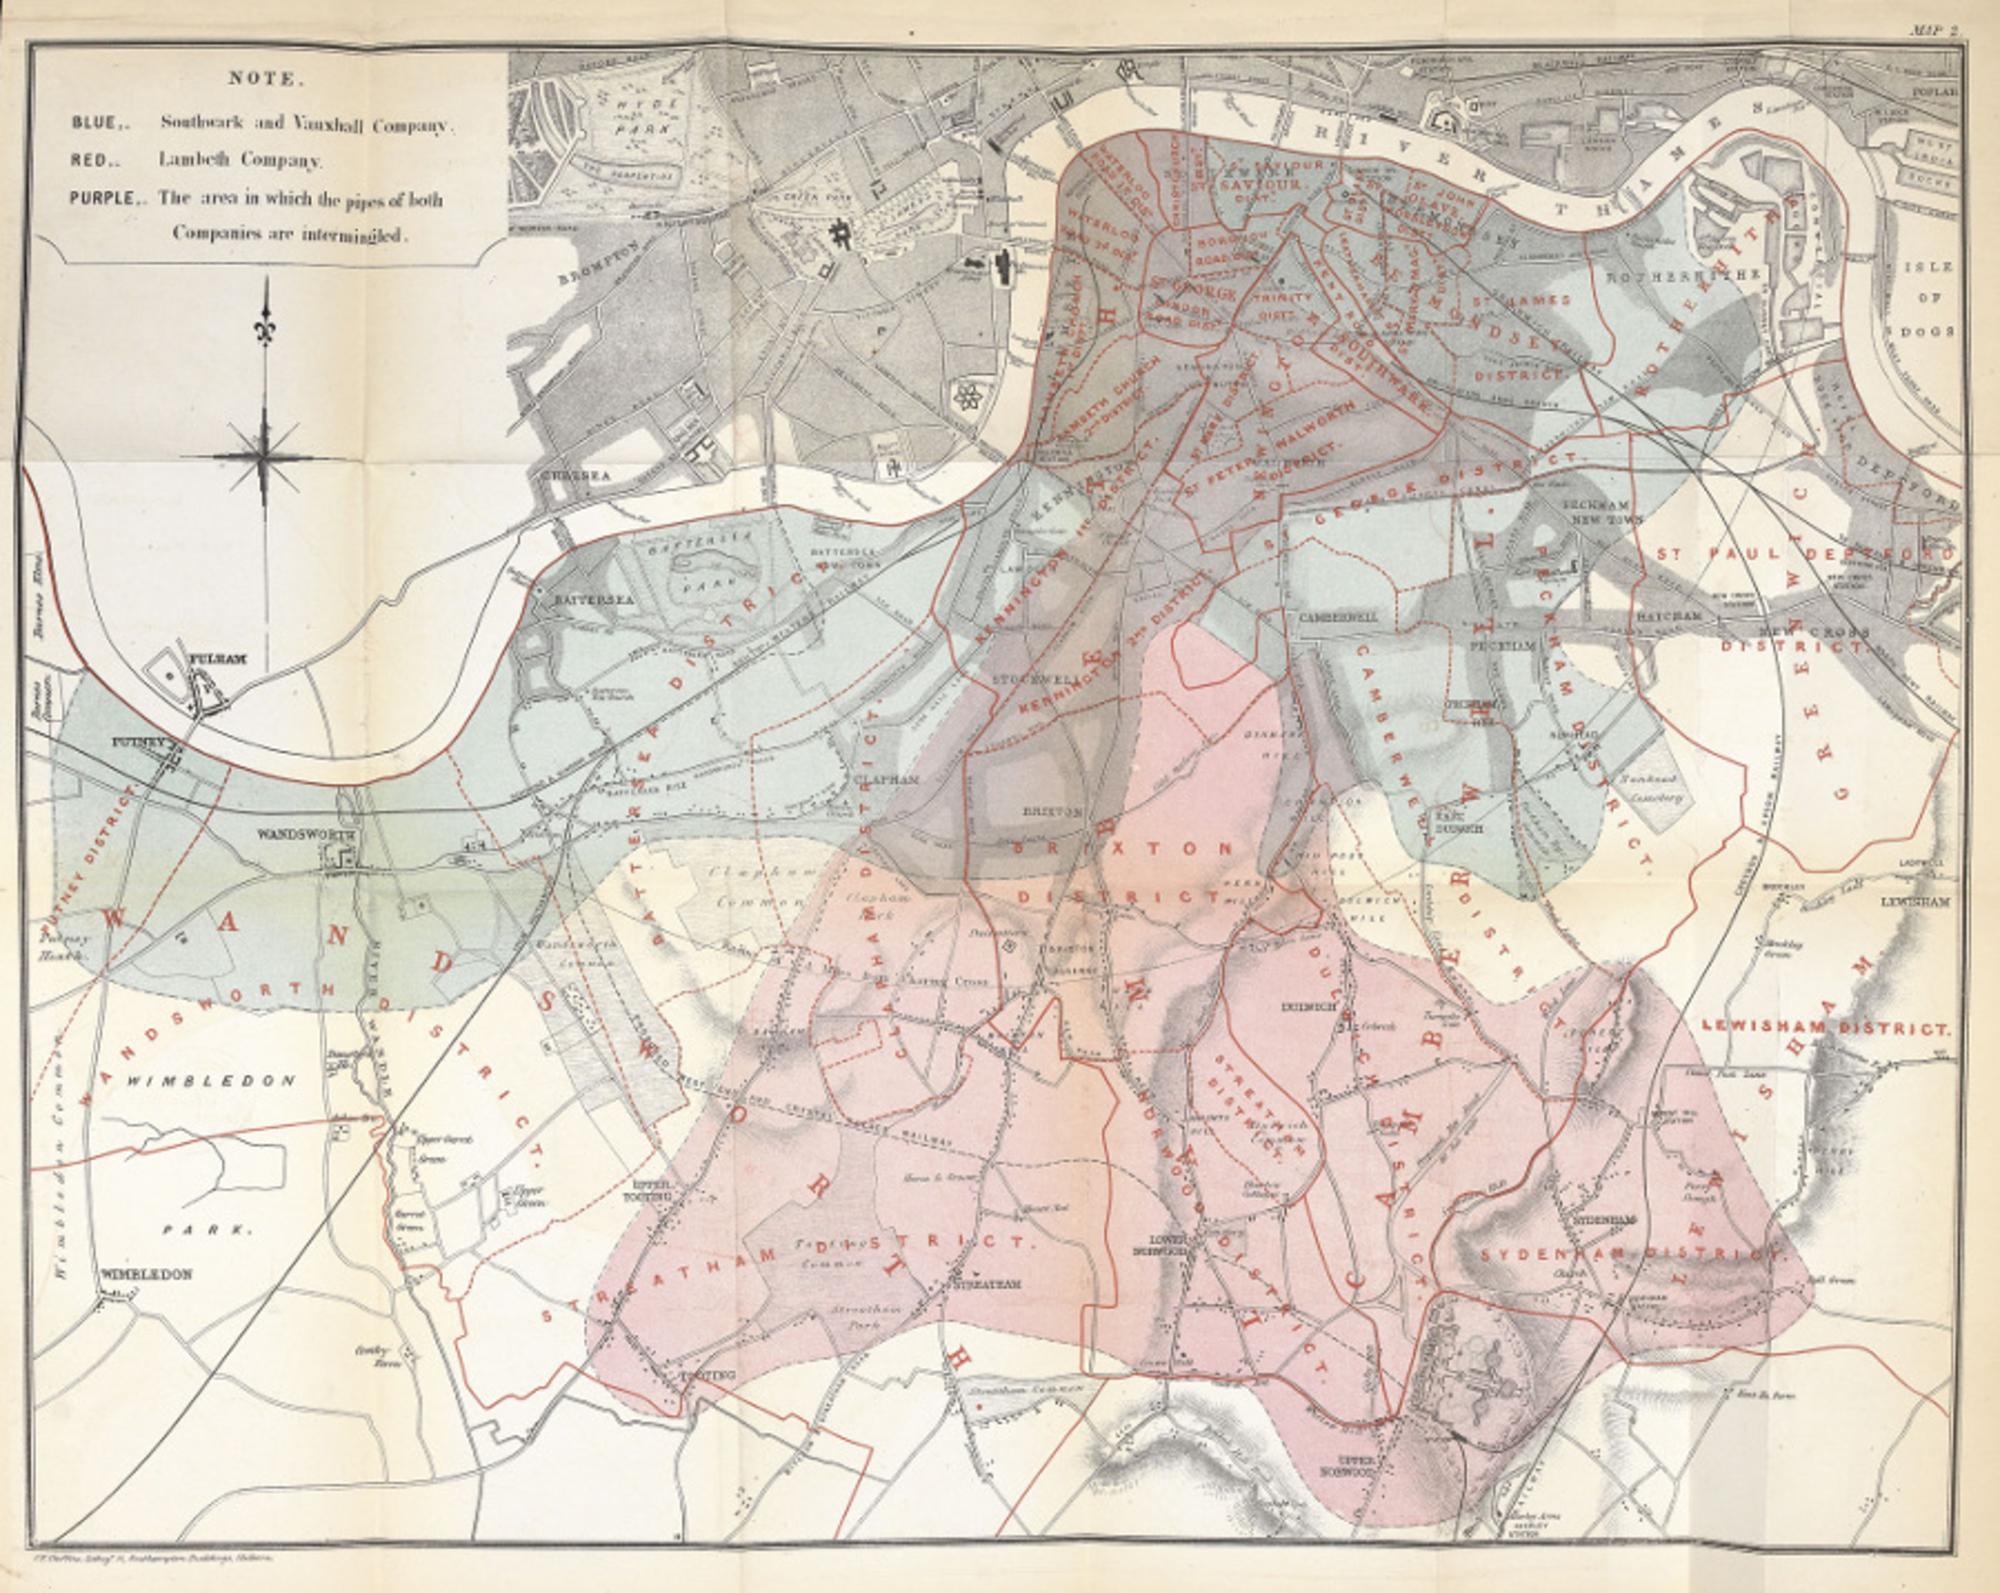 Mapeo del brote de cólera en Londres por John Snow